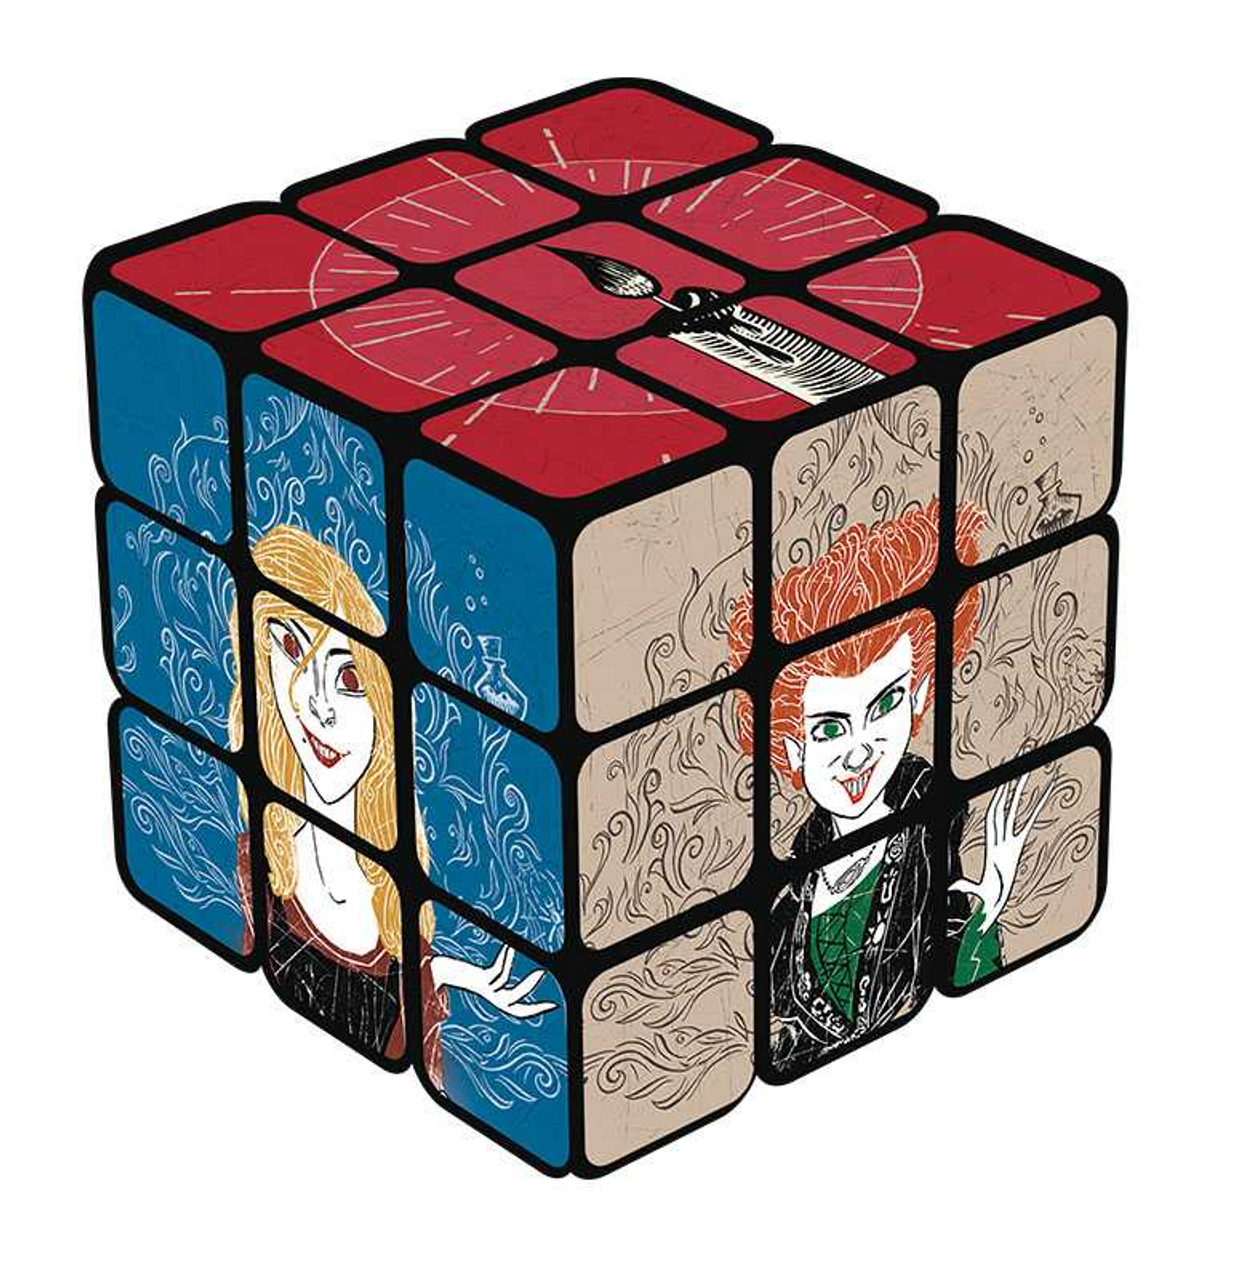 Rubik's Cube: Disney's Hocus Pocus Edition